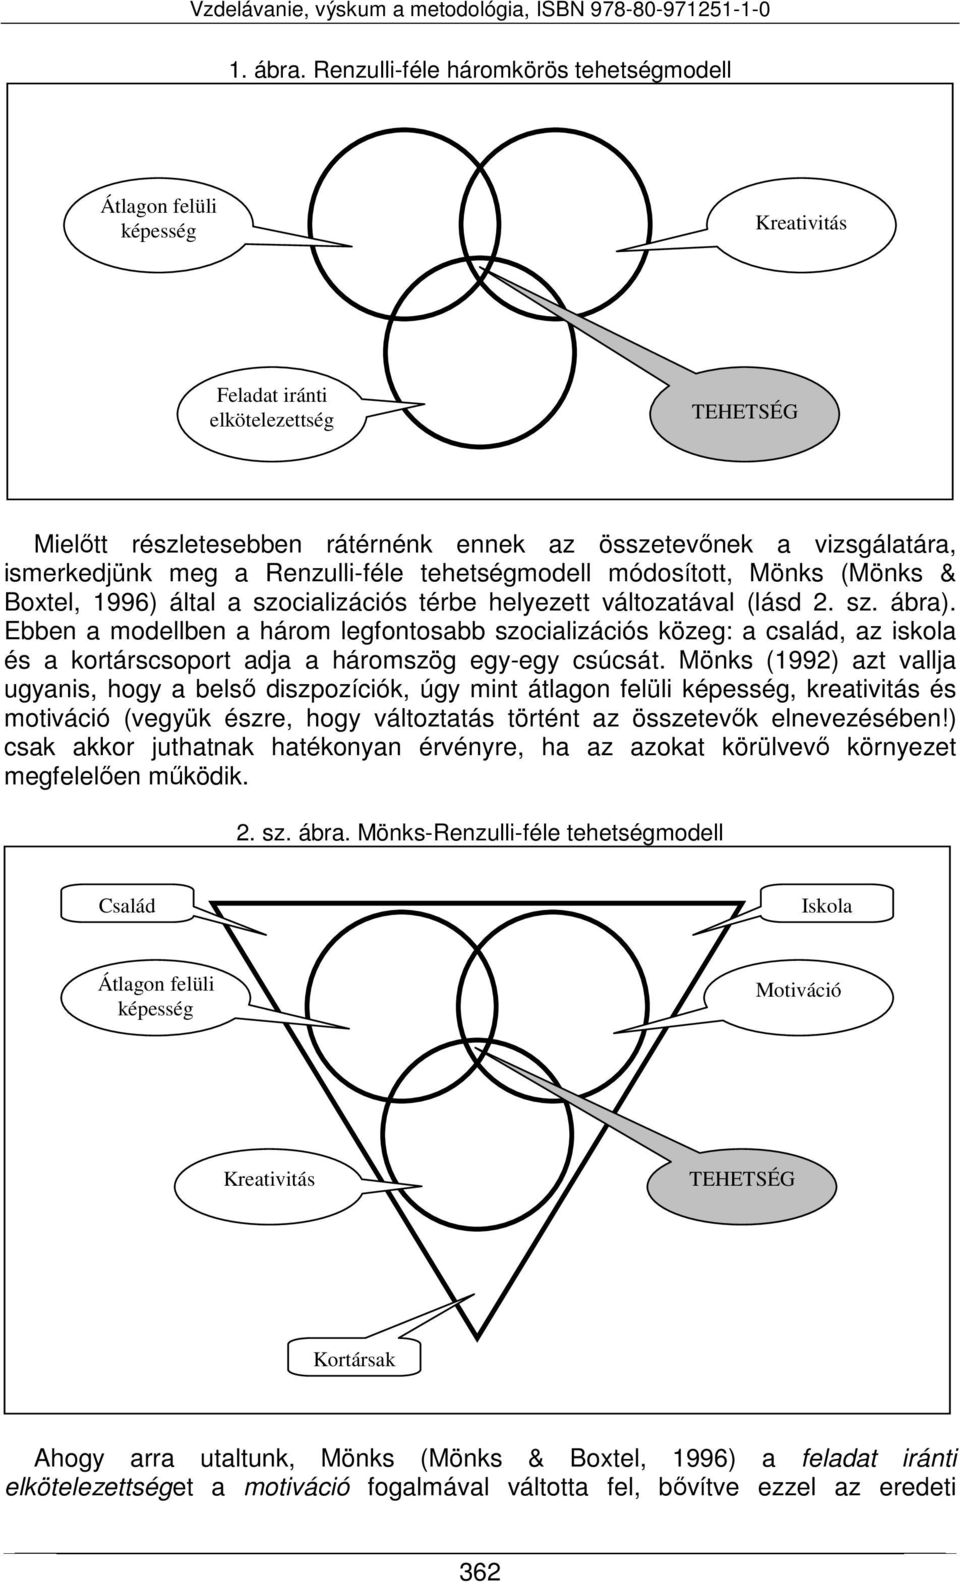 meg a Renzulli-féle tehetségmodell módosított, Mönks (Mönks & Boxtel, 1996) által a szocializációs térbe helyezett változatával (lásd 2. sz. ábra).